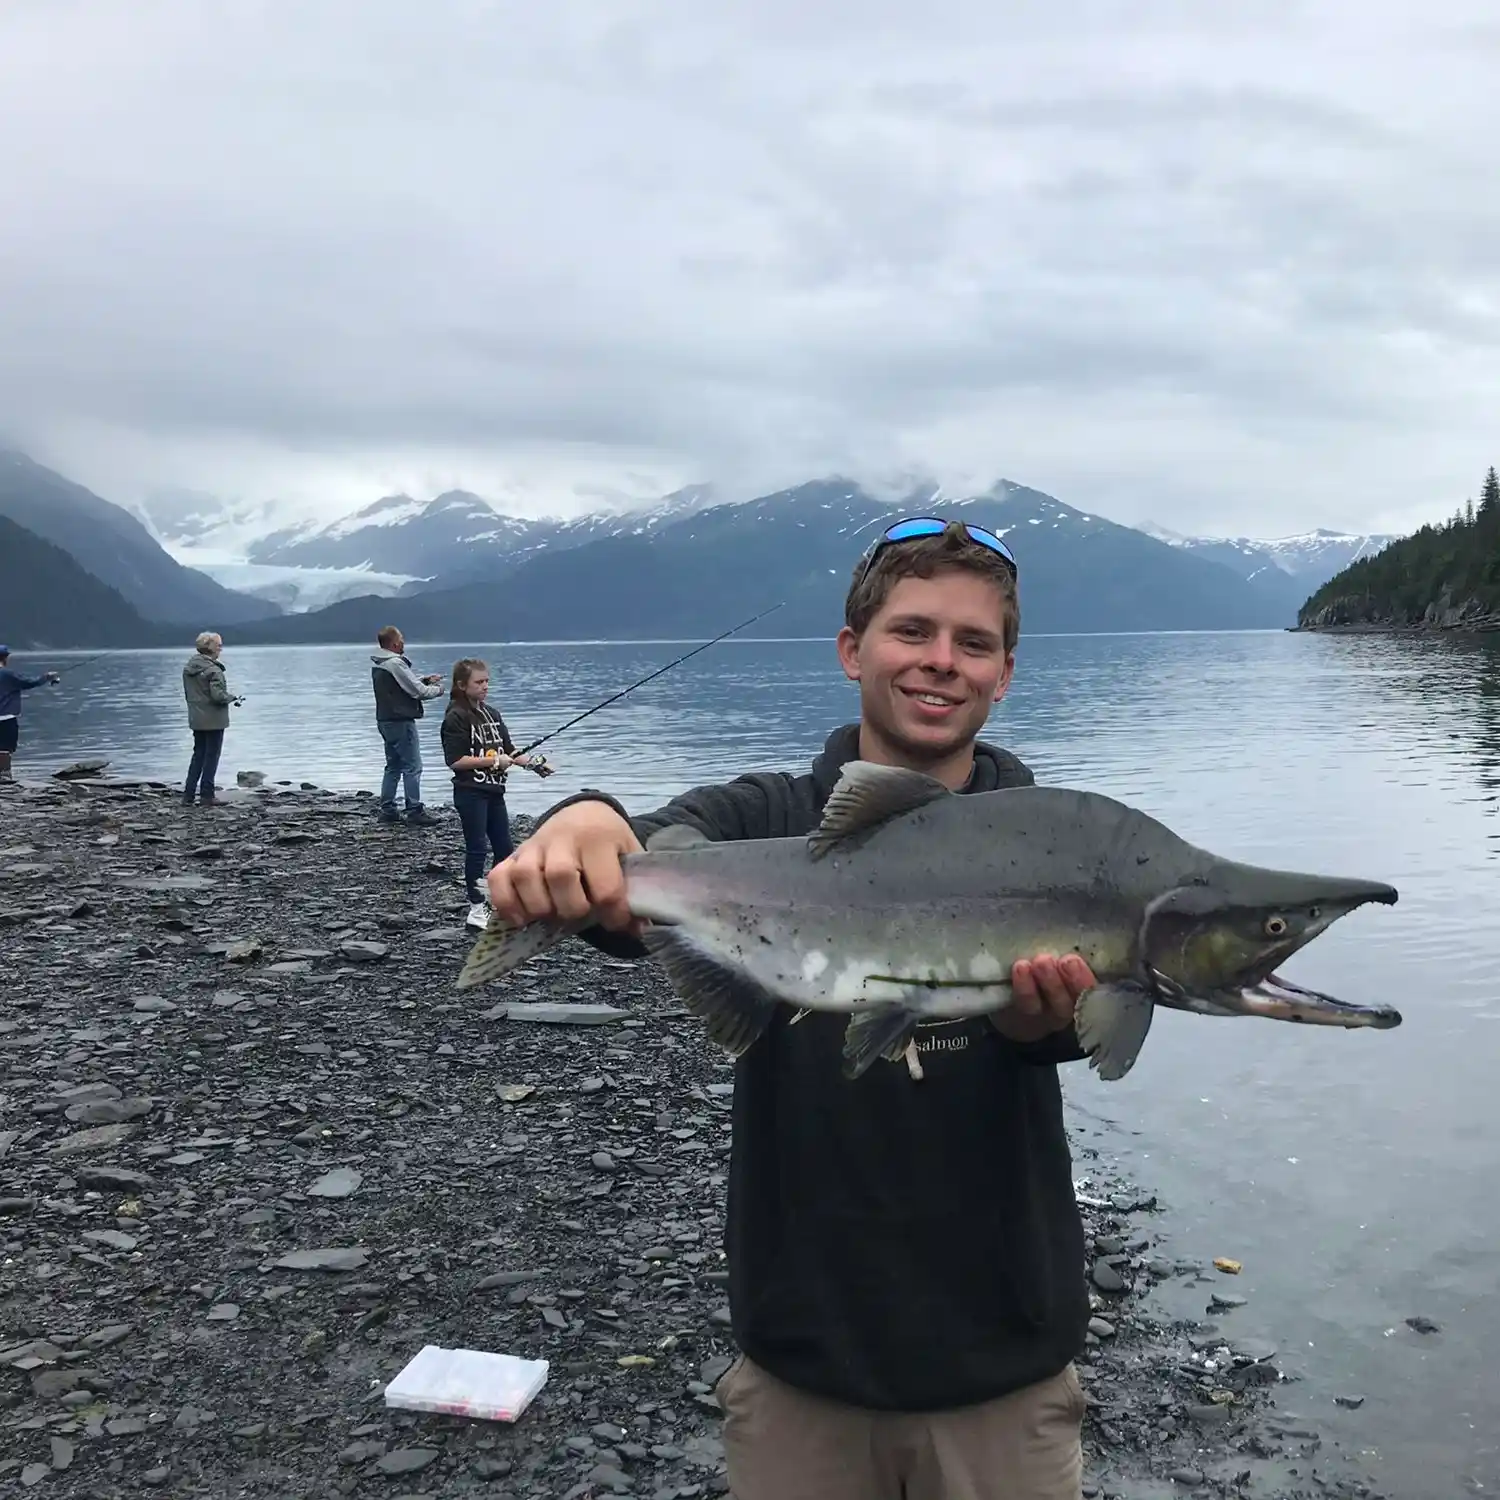 Whittier Fishing - Alaska Outdoors Supersite